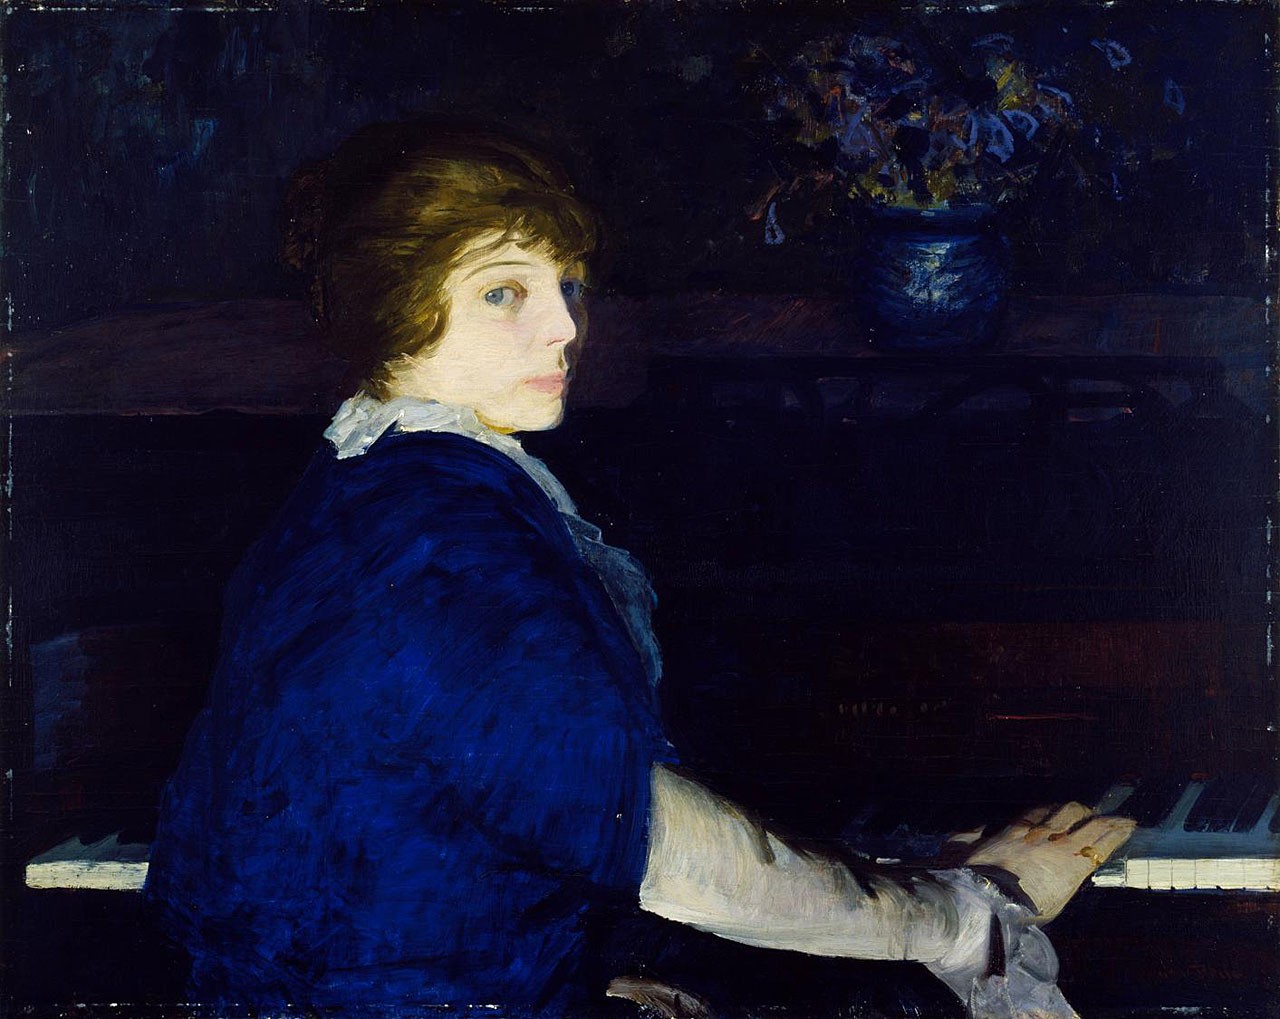 ピアノを弾くエマ by George Bellows - 1914 - 73 x 94 cm 